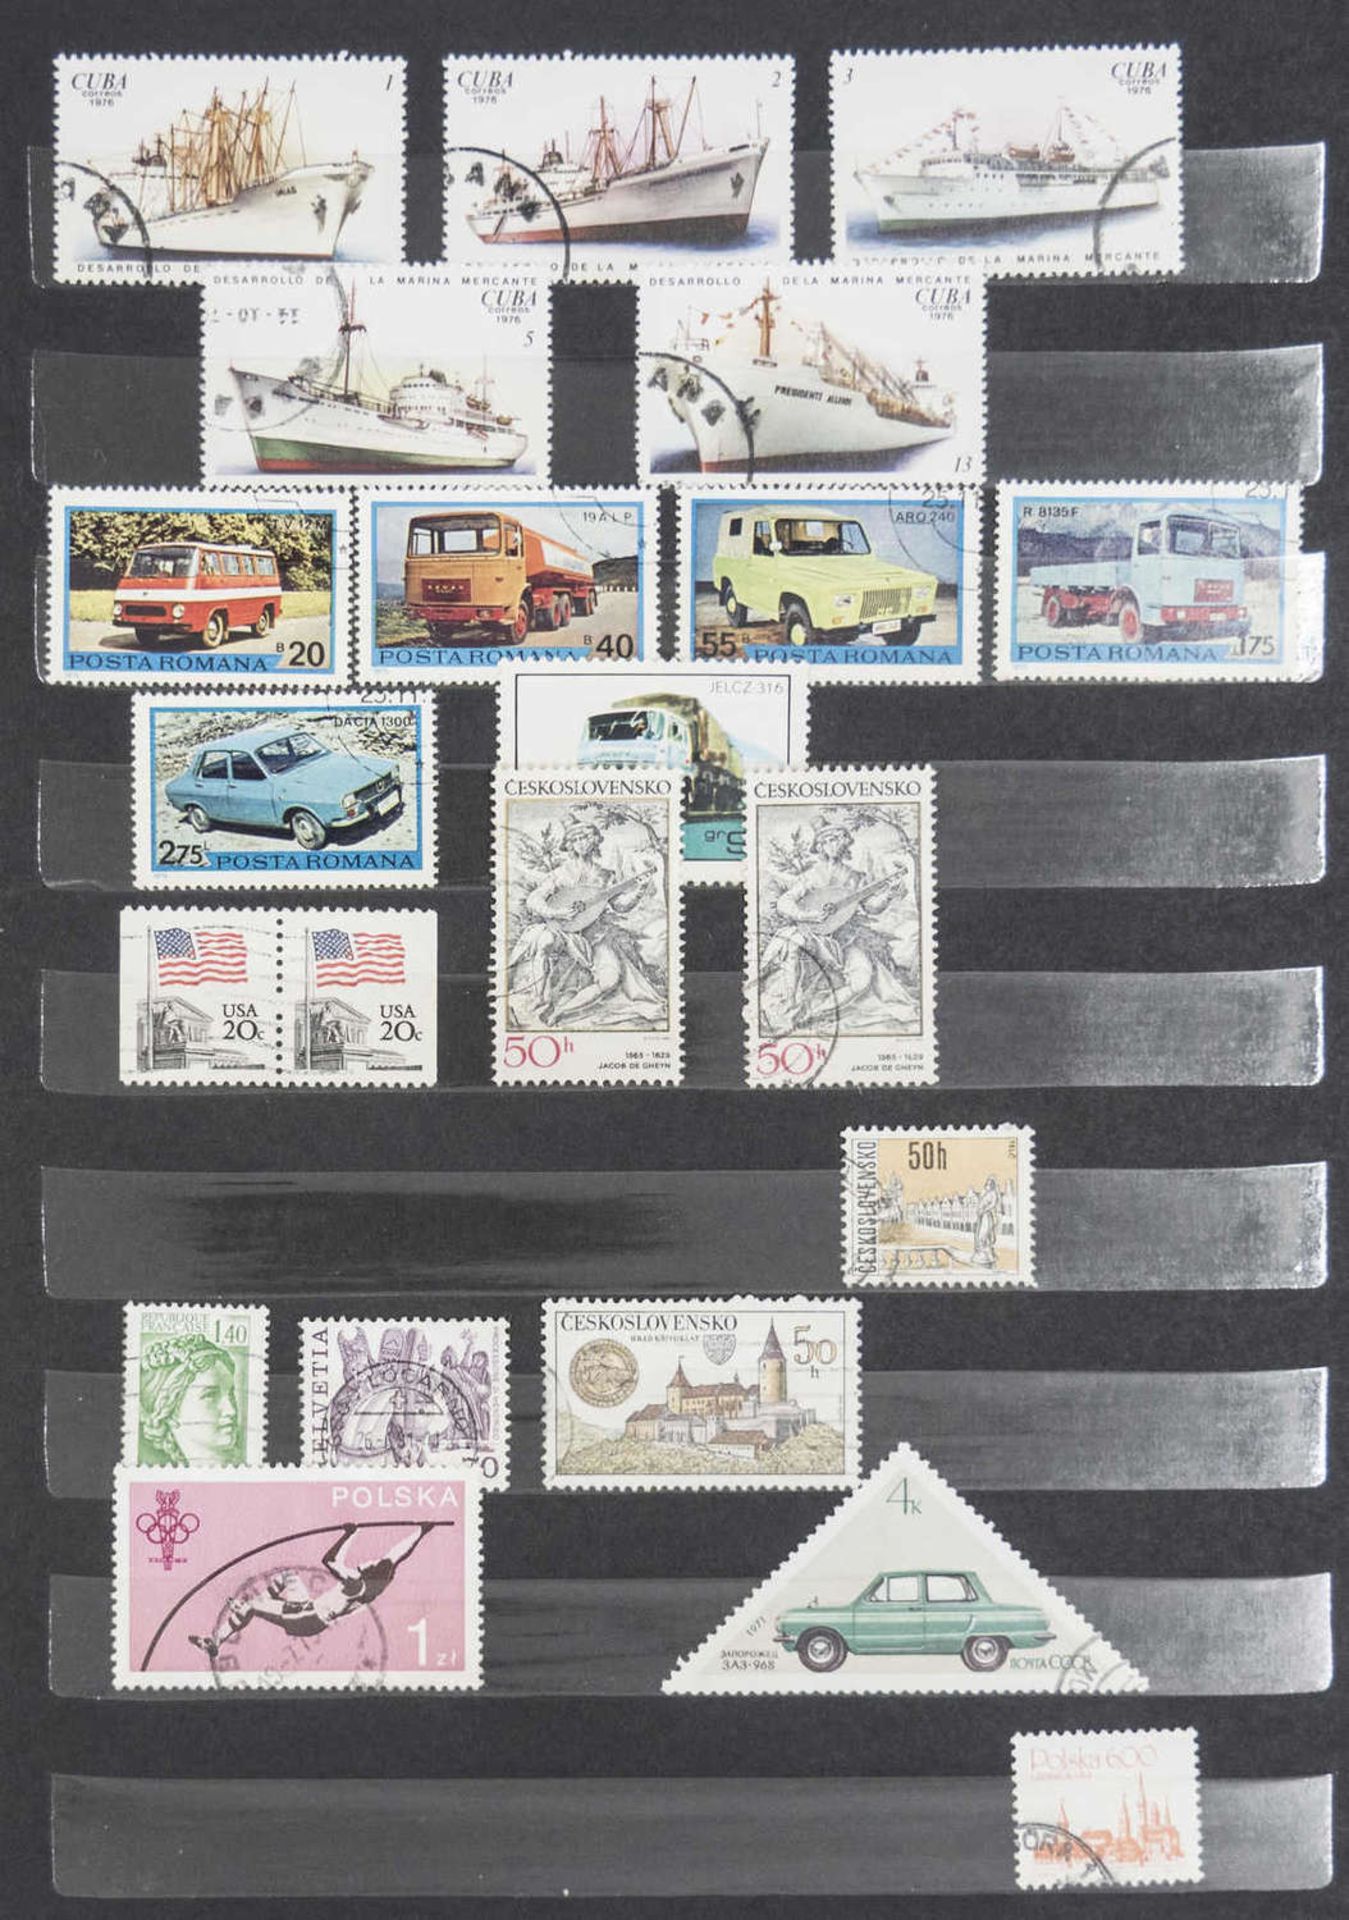 Steck - Album "alrabra" mit Briefmarken - Sammlung aus aller Welt. Überwiegend gestempelt. Eine - Bild 6 aus 13